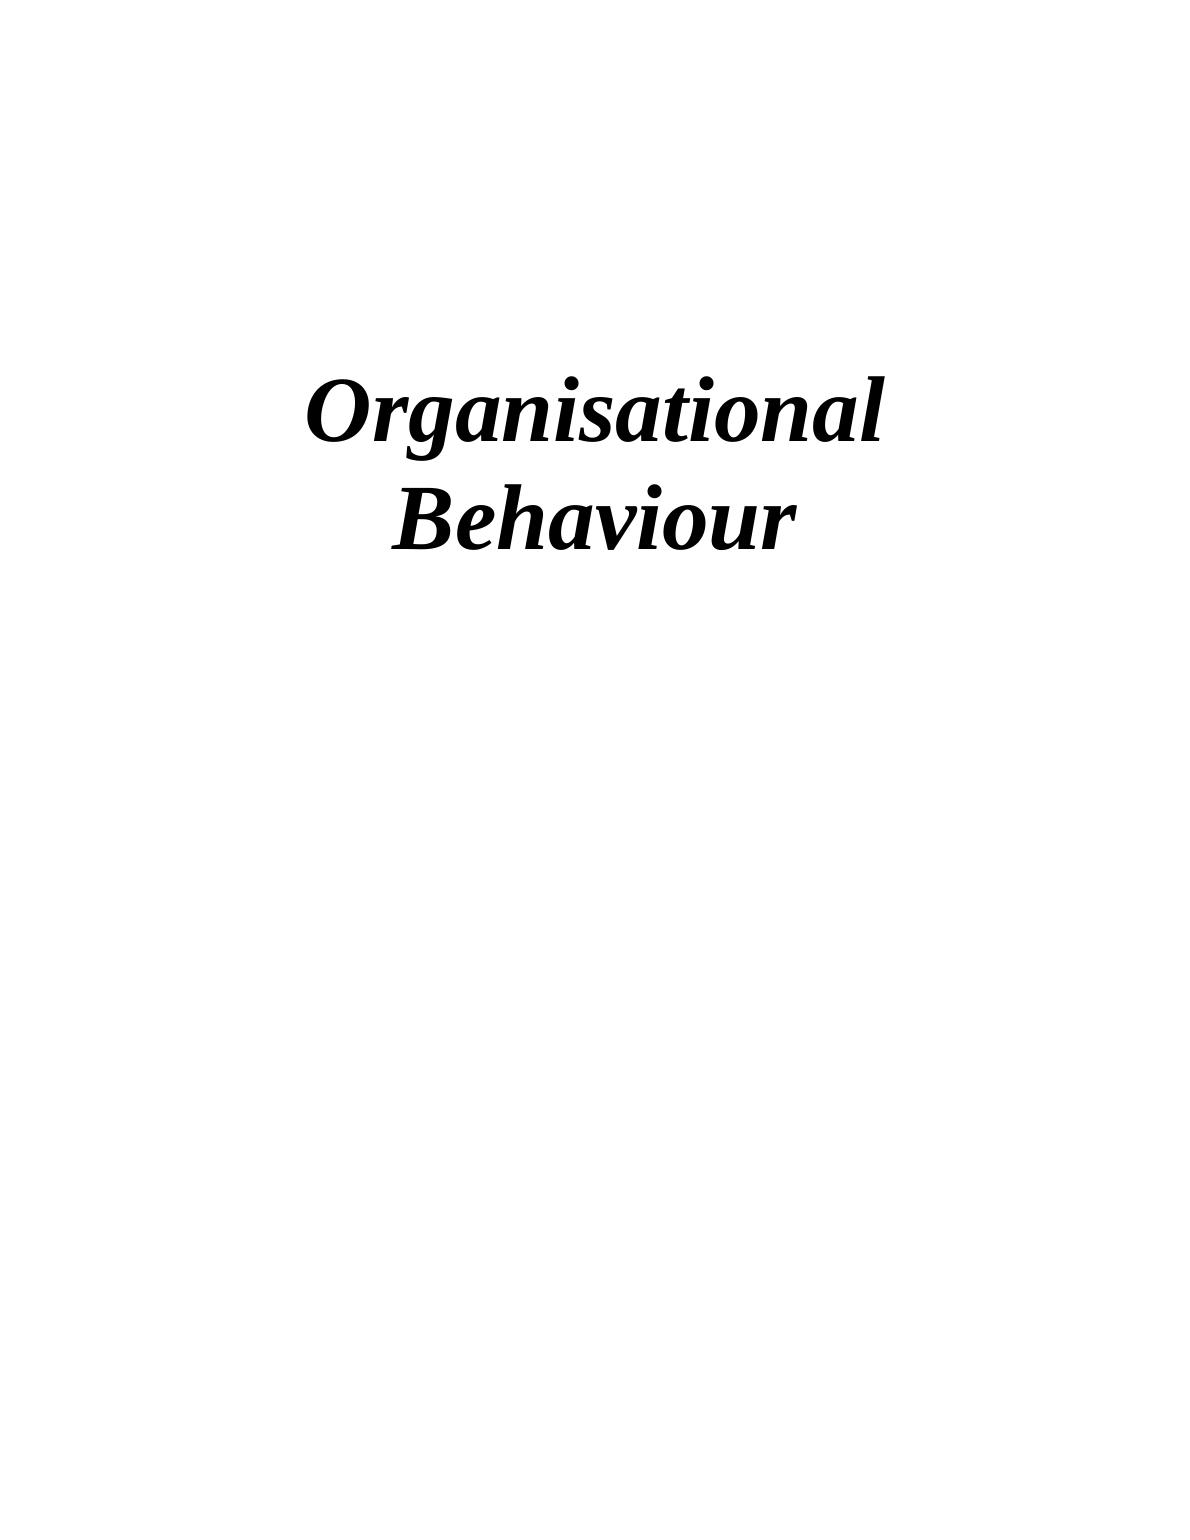 Organisational Behaviour  -  A David &  Co  Assignment_1